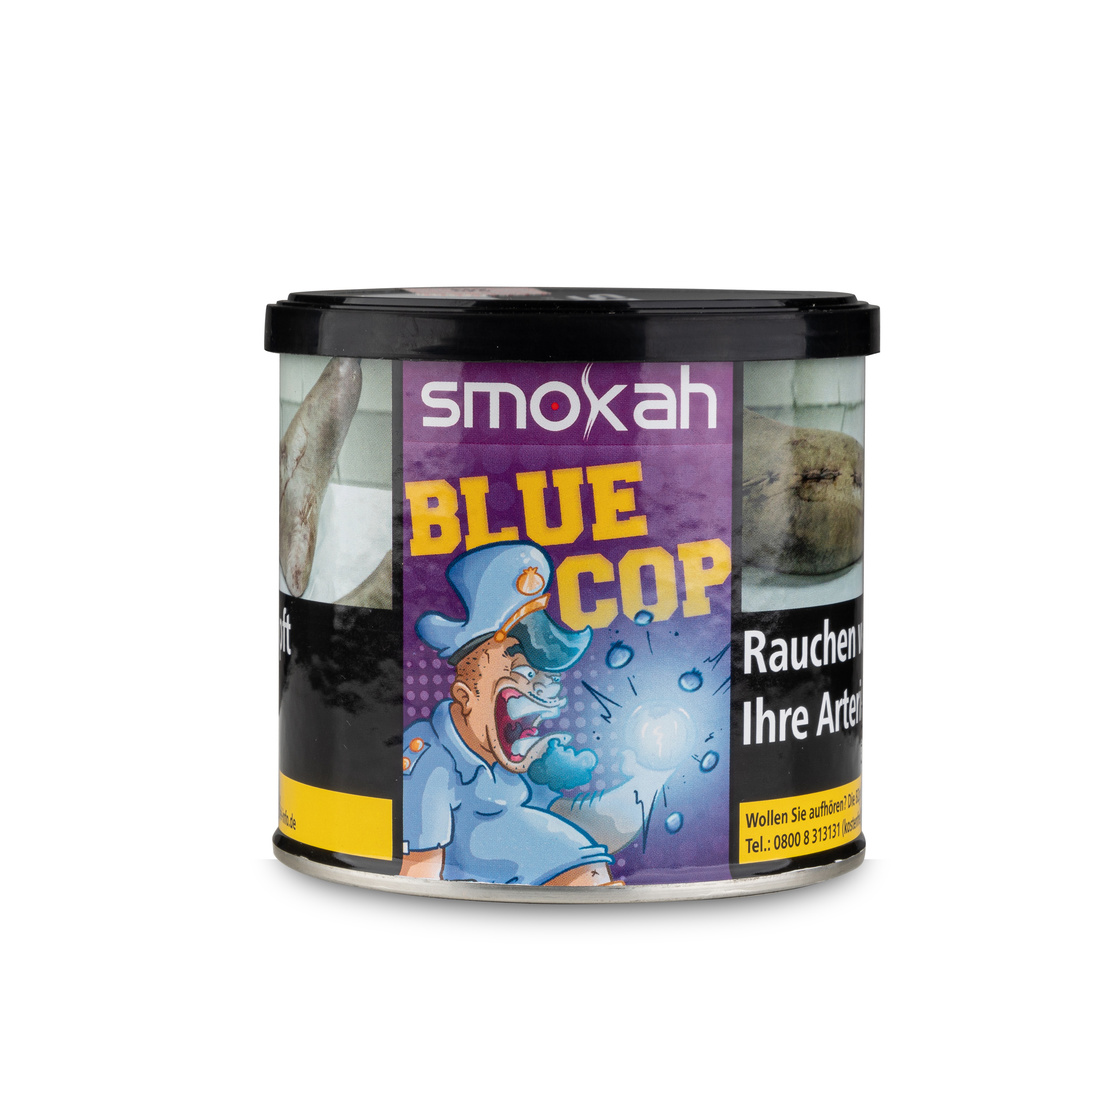 Smokah Blue Cop 200g